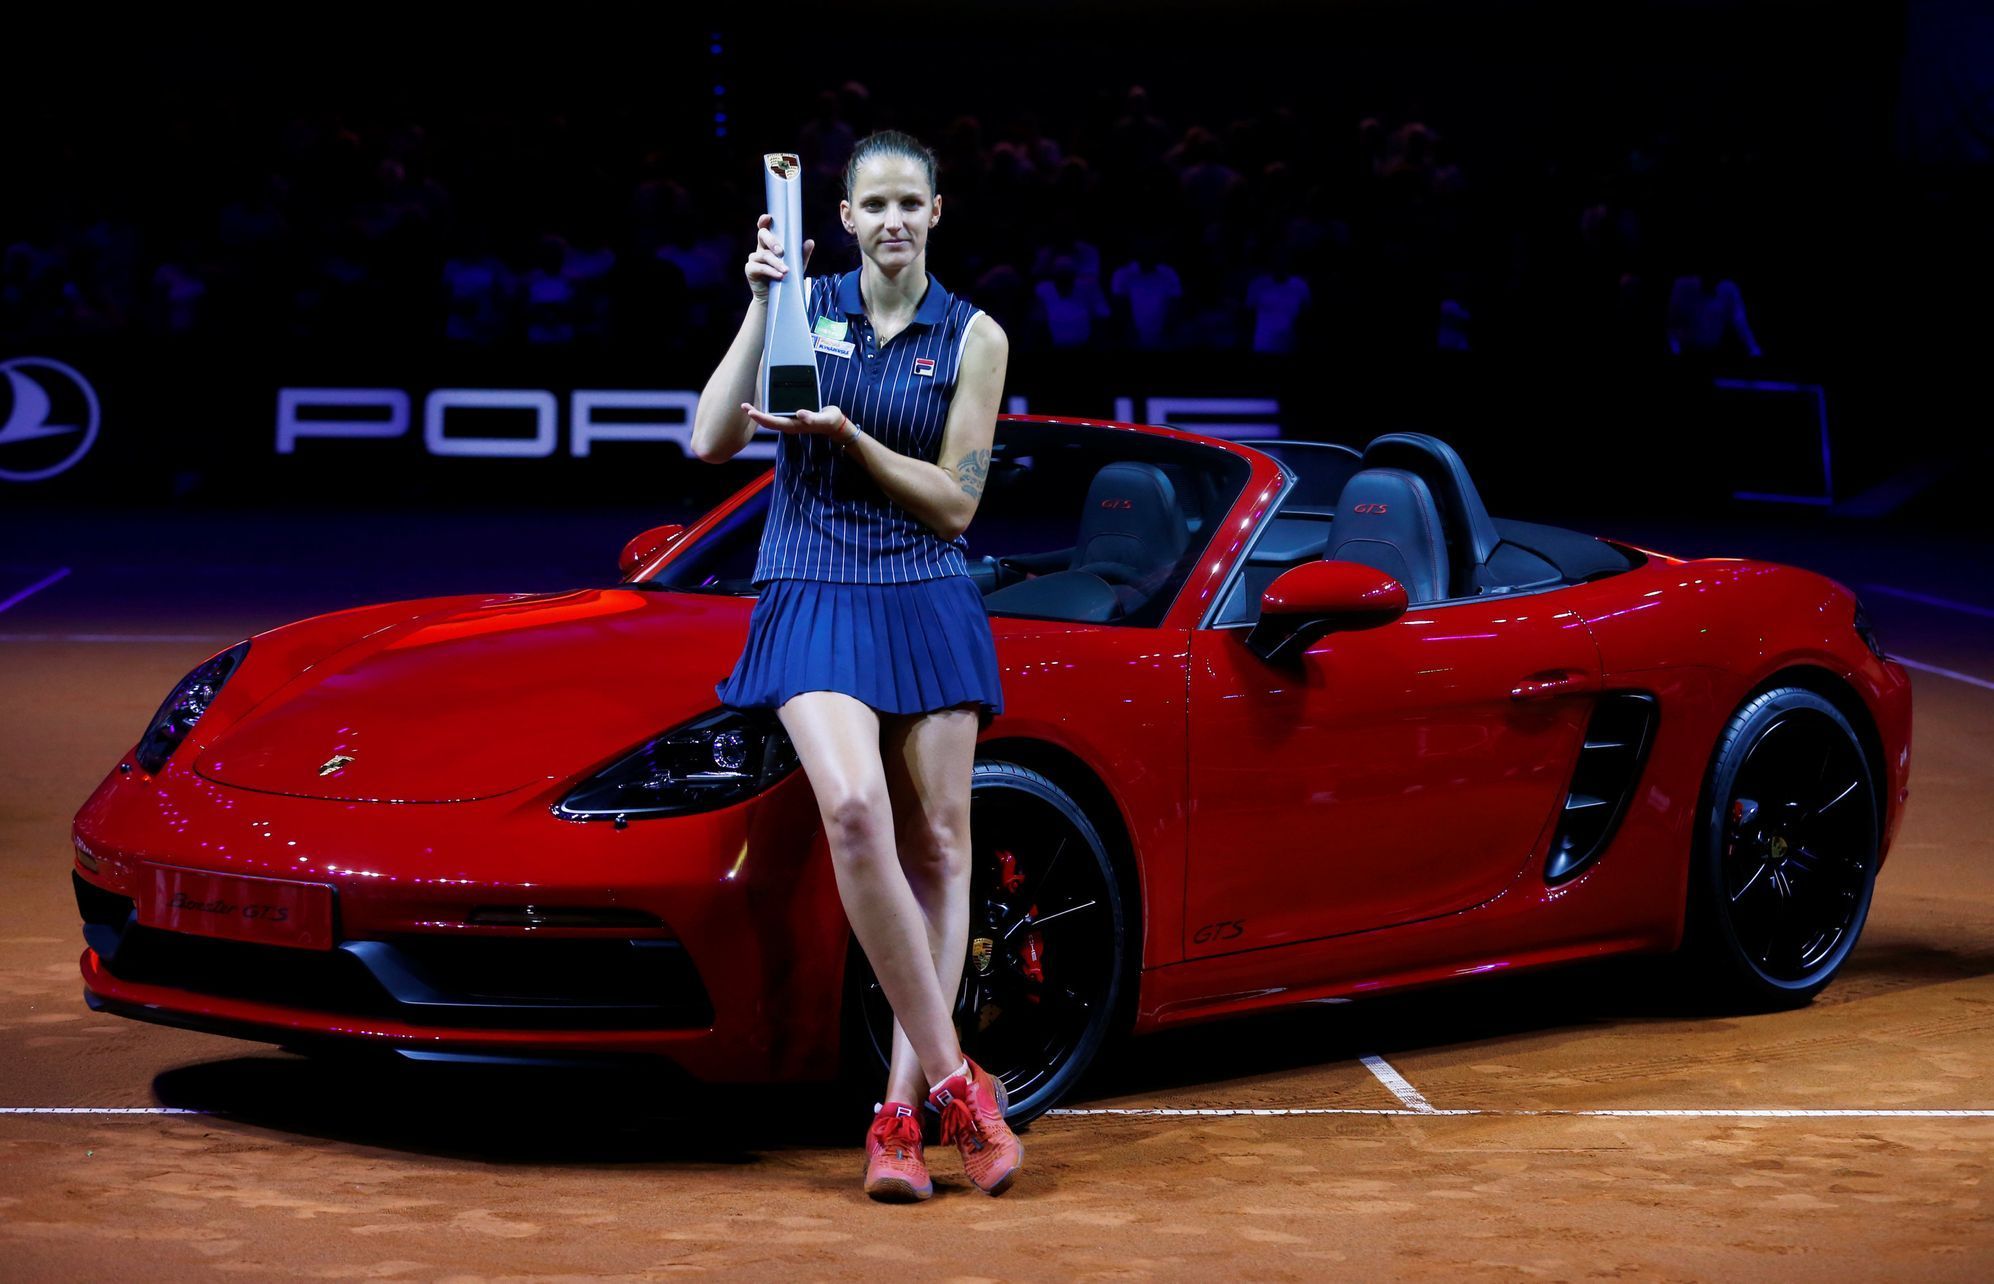 Karolína Plíšková ve finále turnaje ve Stuttgartu 2018